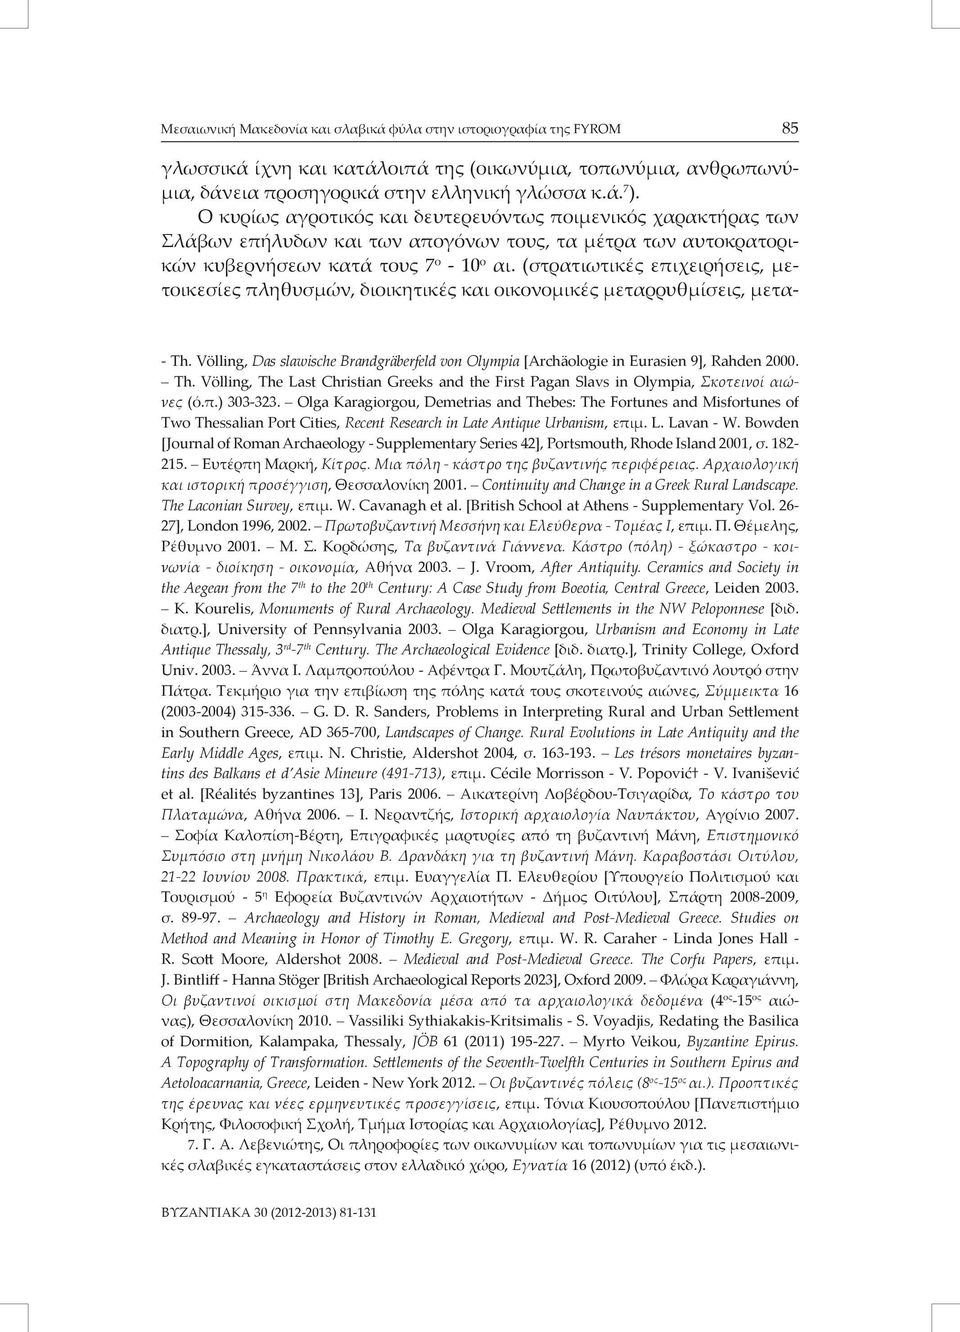 (στρατιωτικές επιχειρήσεις, μετοικεσίες πληθυσμών, διοικητικές και οικονομικές μεταρρυθμίσεις, μετα- - Th. Völling, Das slawische Brandgräberfeld von Olympia [Archäologie in Eurasien 9], Rahden 2000.